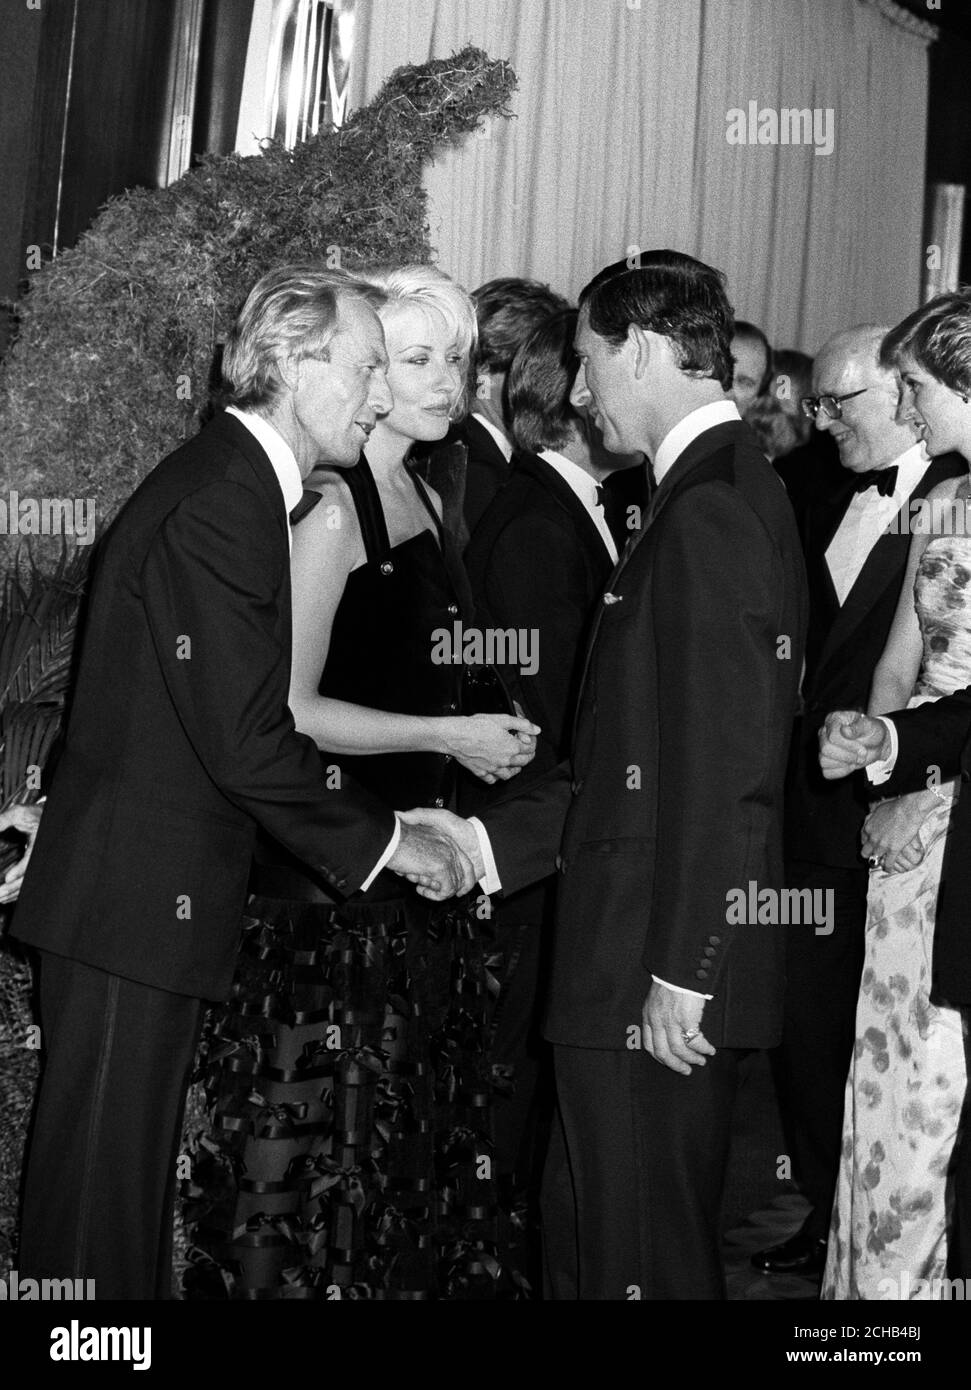 Le Prince de Galles rencontre l'acteur australien Paul Hogan, 49 ans, star de 'Crocodile' Dundee II, qui fait ses débuts à l'Empire, Leicester Square, Londres, ce soir. À côté de Hogan se trouve sa co-star Linda Kozlowski. Banque D'Images